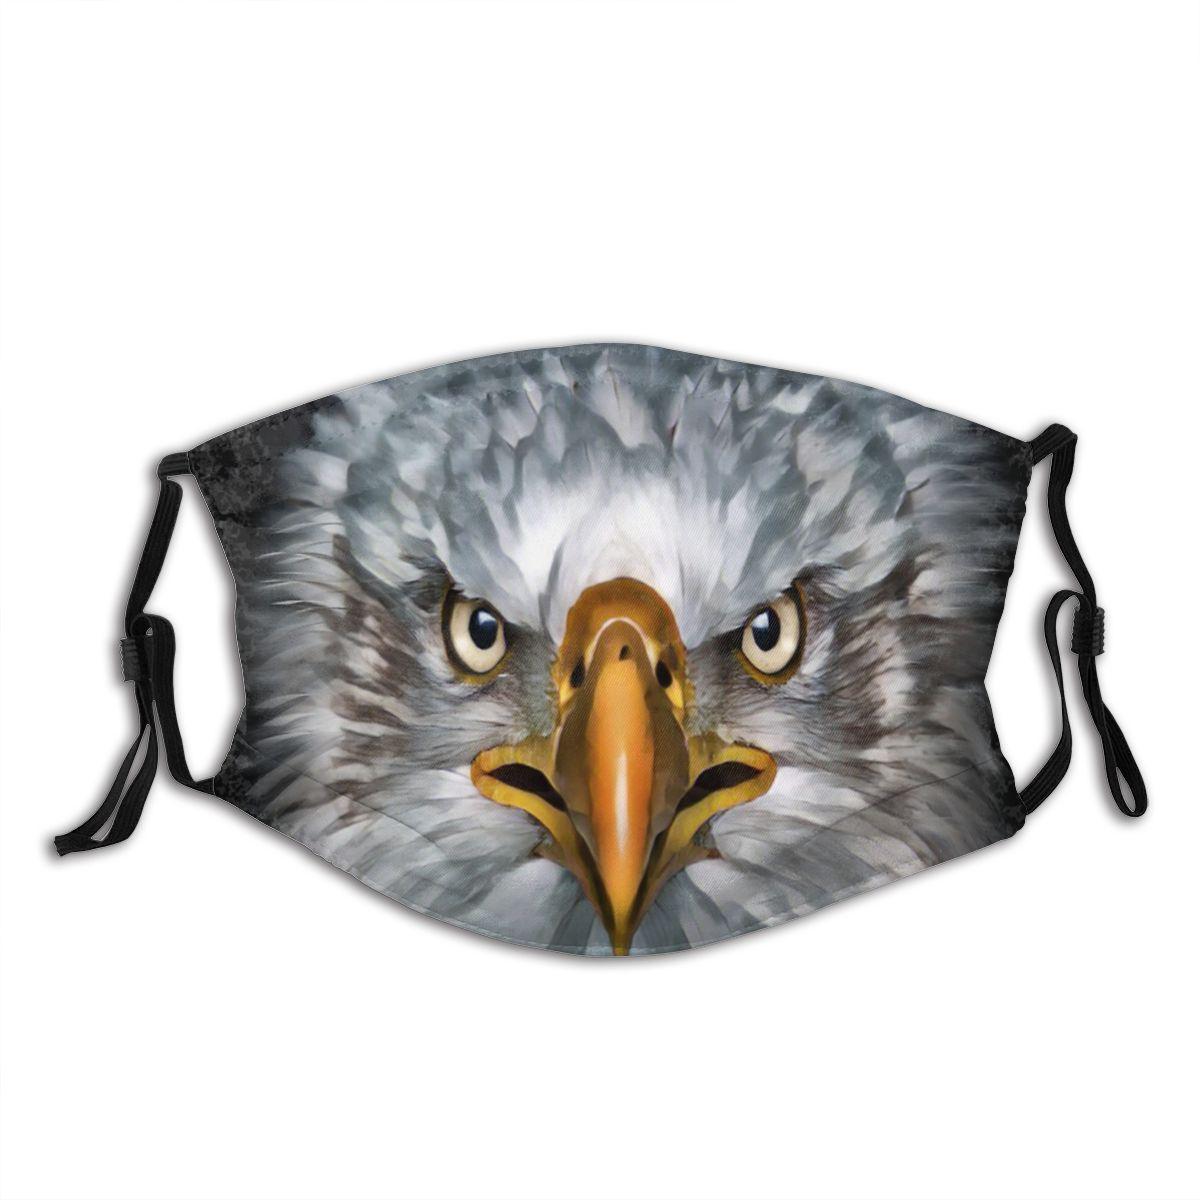 Изображение товара: Маска для лица лысый орел хищница многоразовая с принтом маска против смога Пылезащитная с фильтром зимняя защитная маска